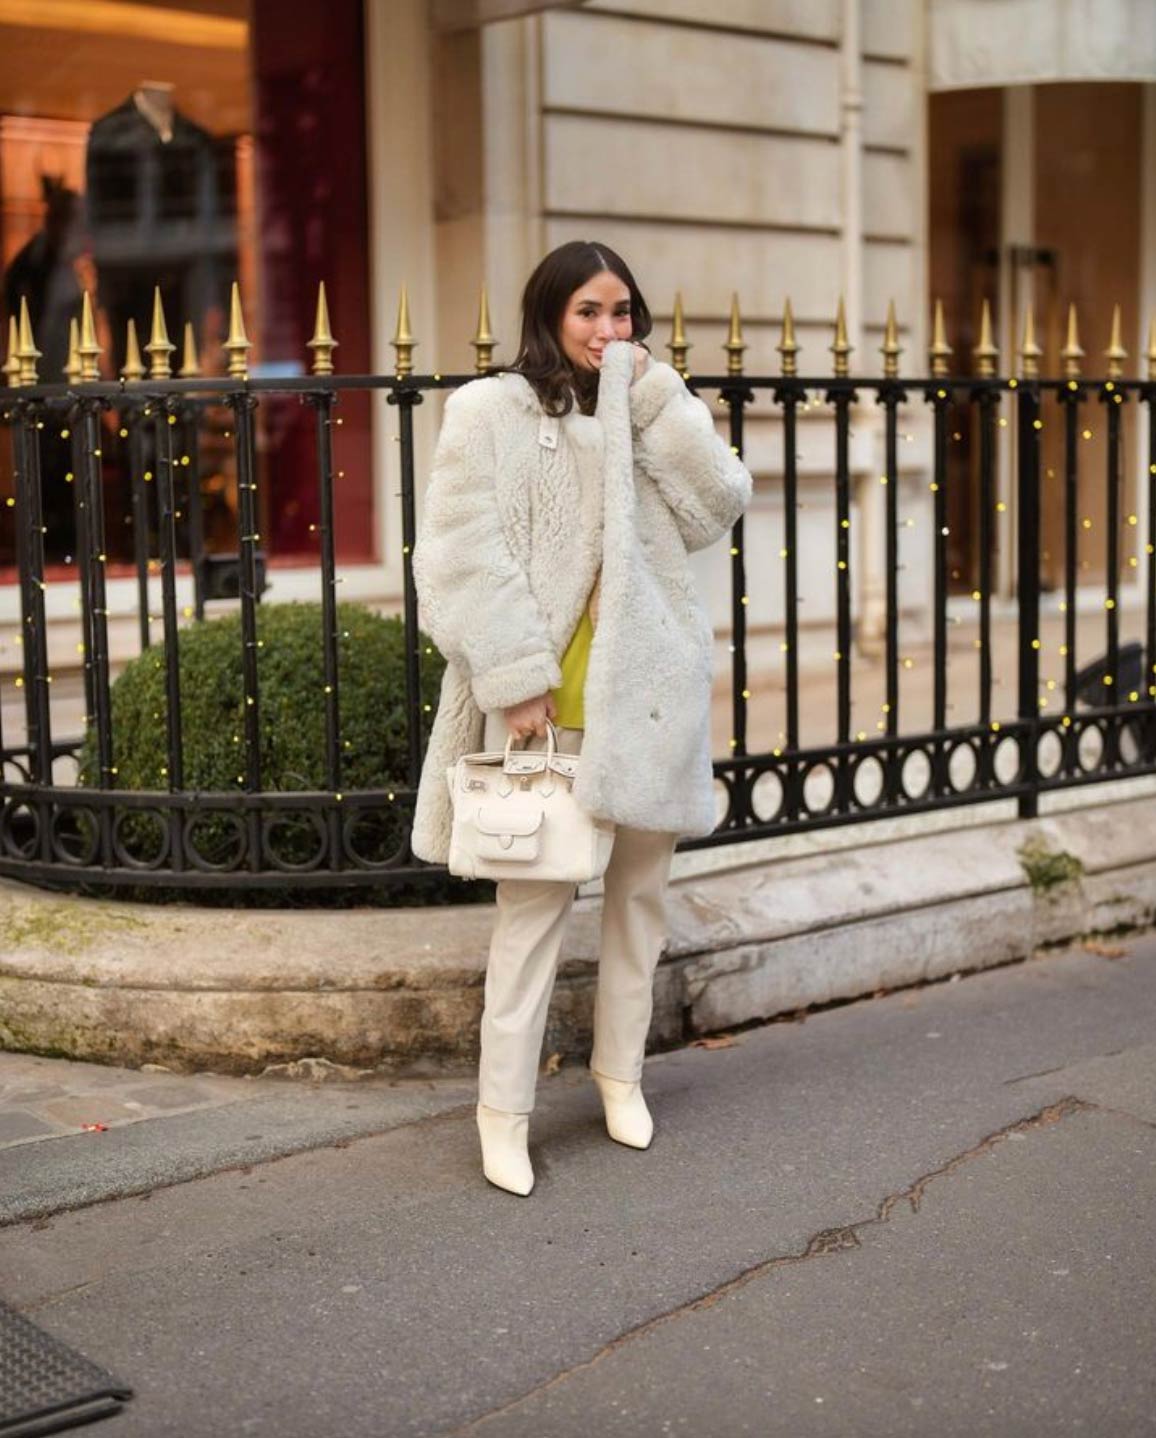 Heart Evangelista sports an Hermès Birkin bag in Paris